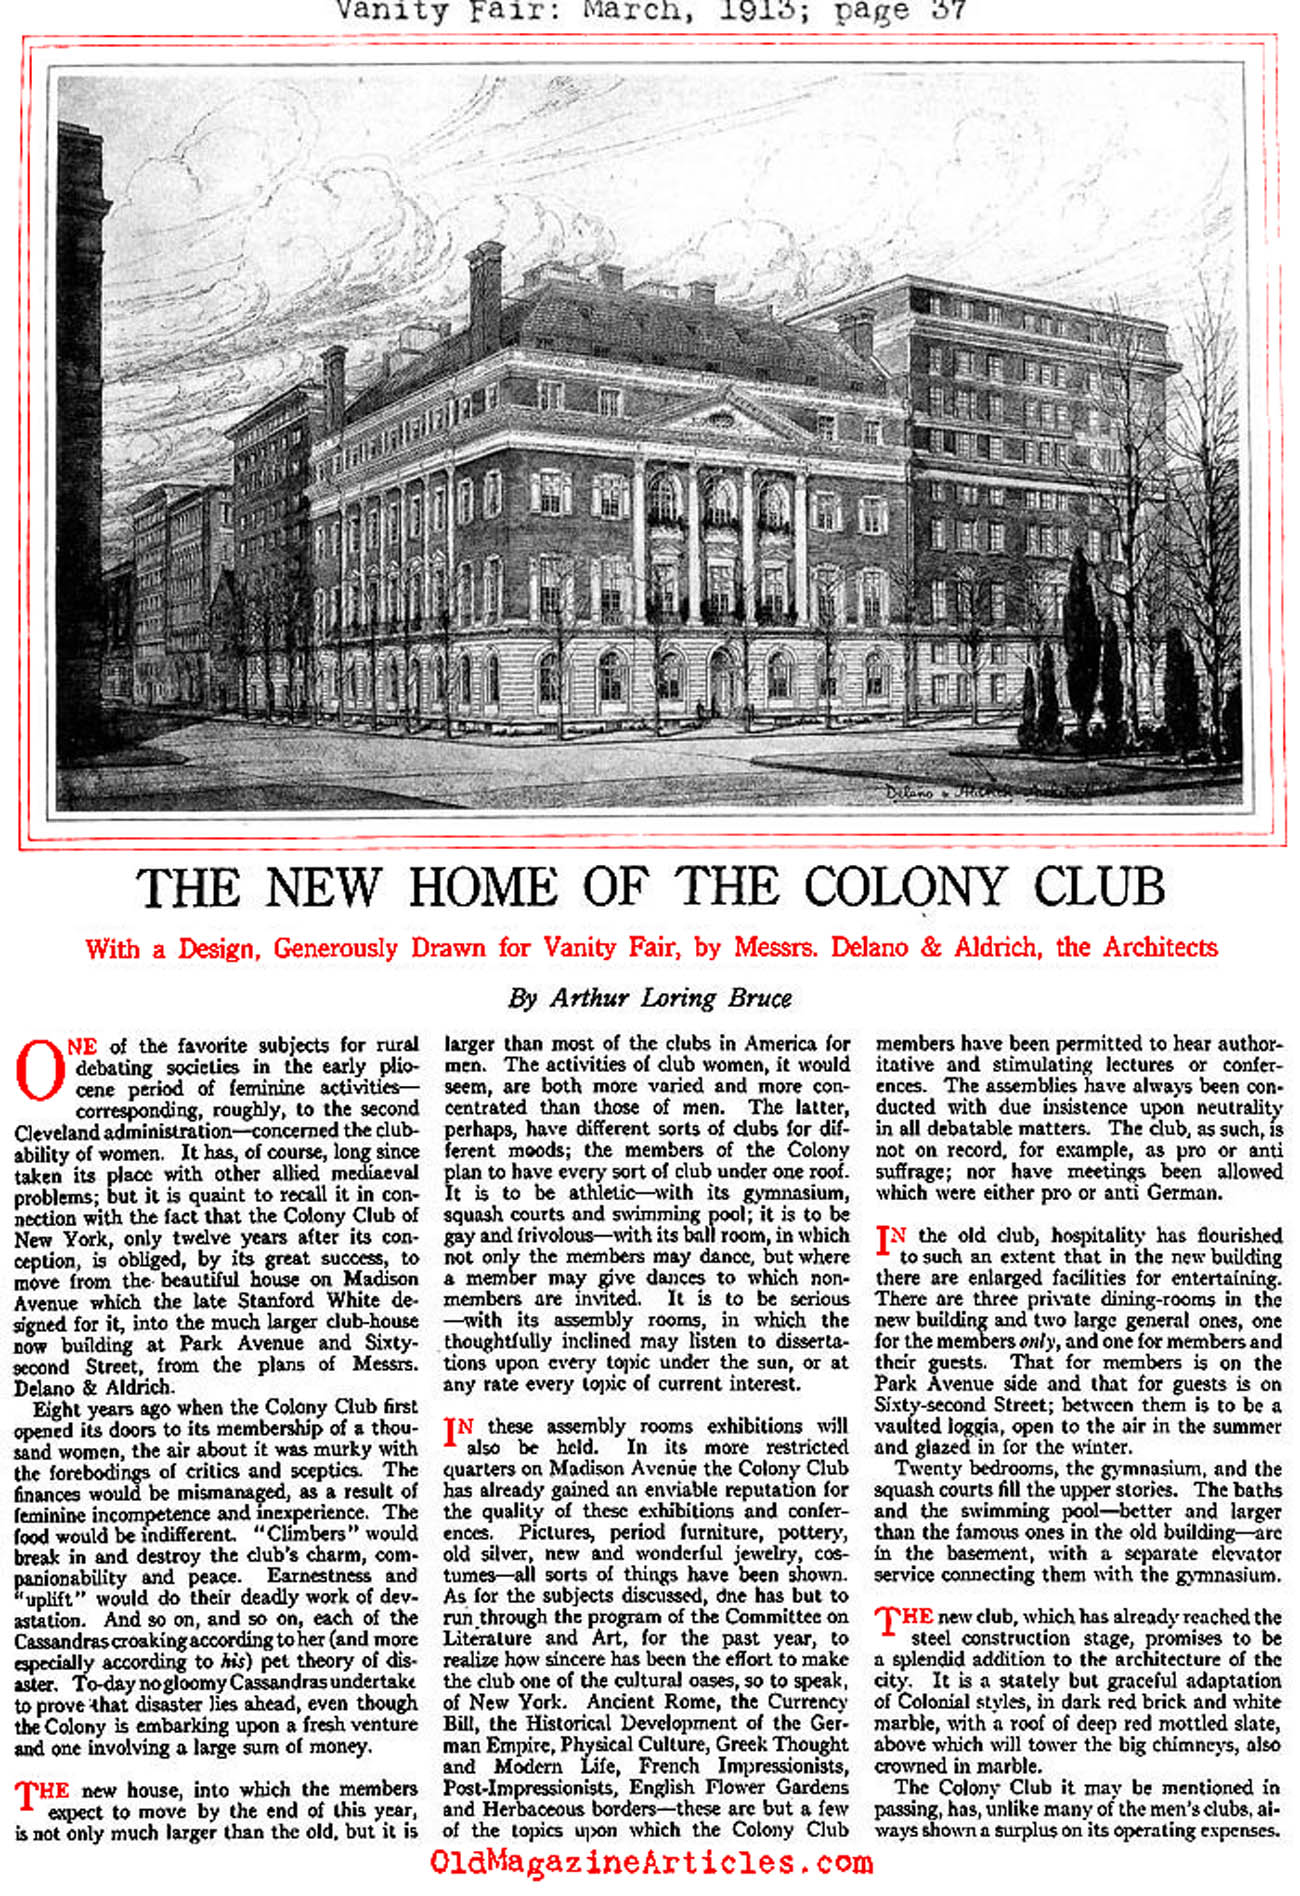 A New Colony Club (Vanity Fair, 1913)